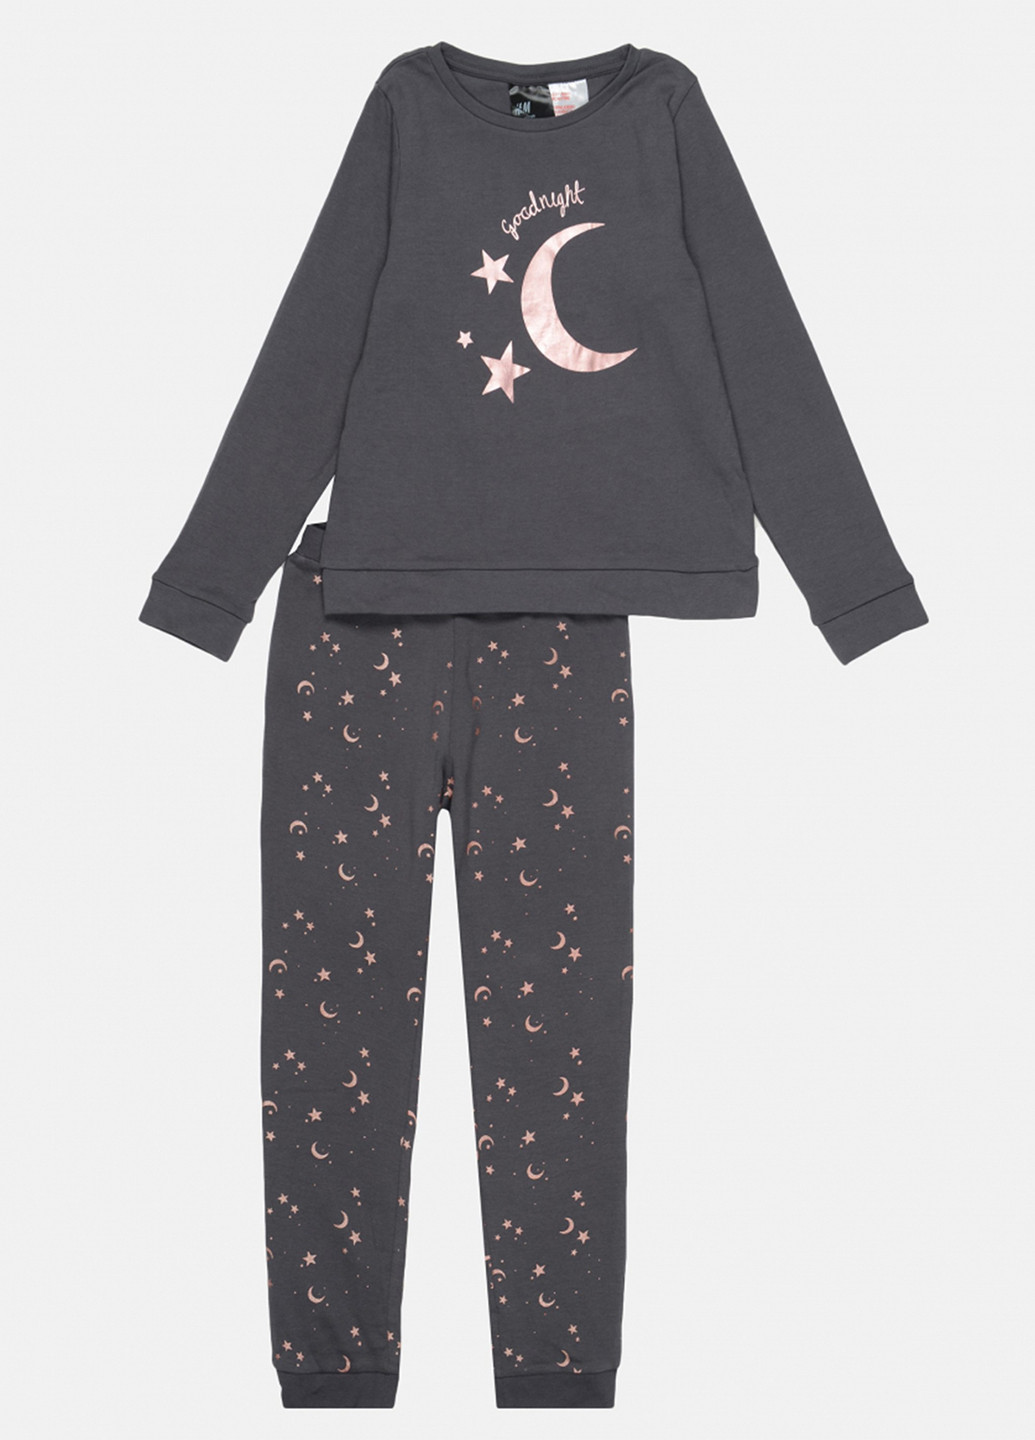 Графитовая всесезон пижама (свитшот, брюки) свитшот + брюки H&M